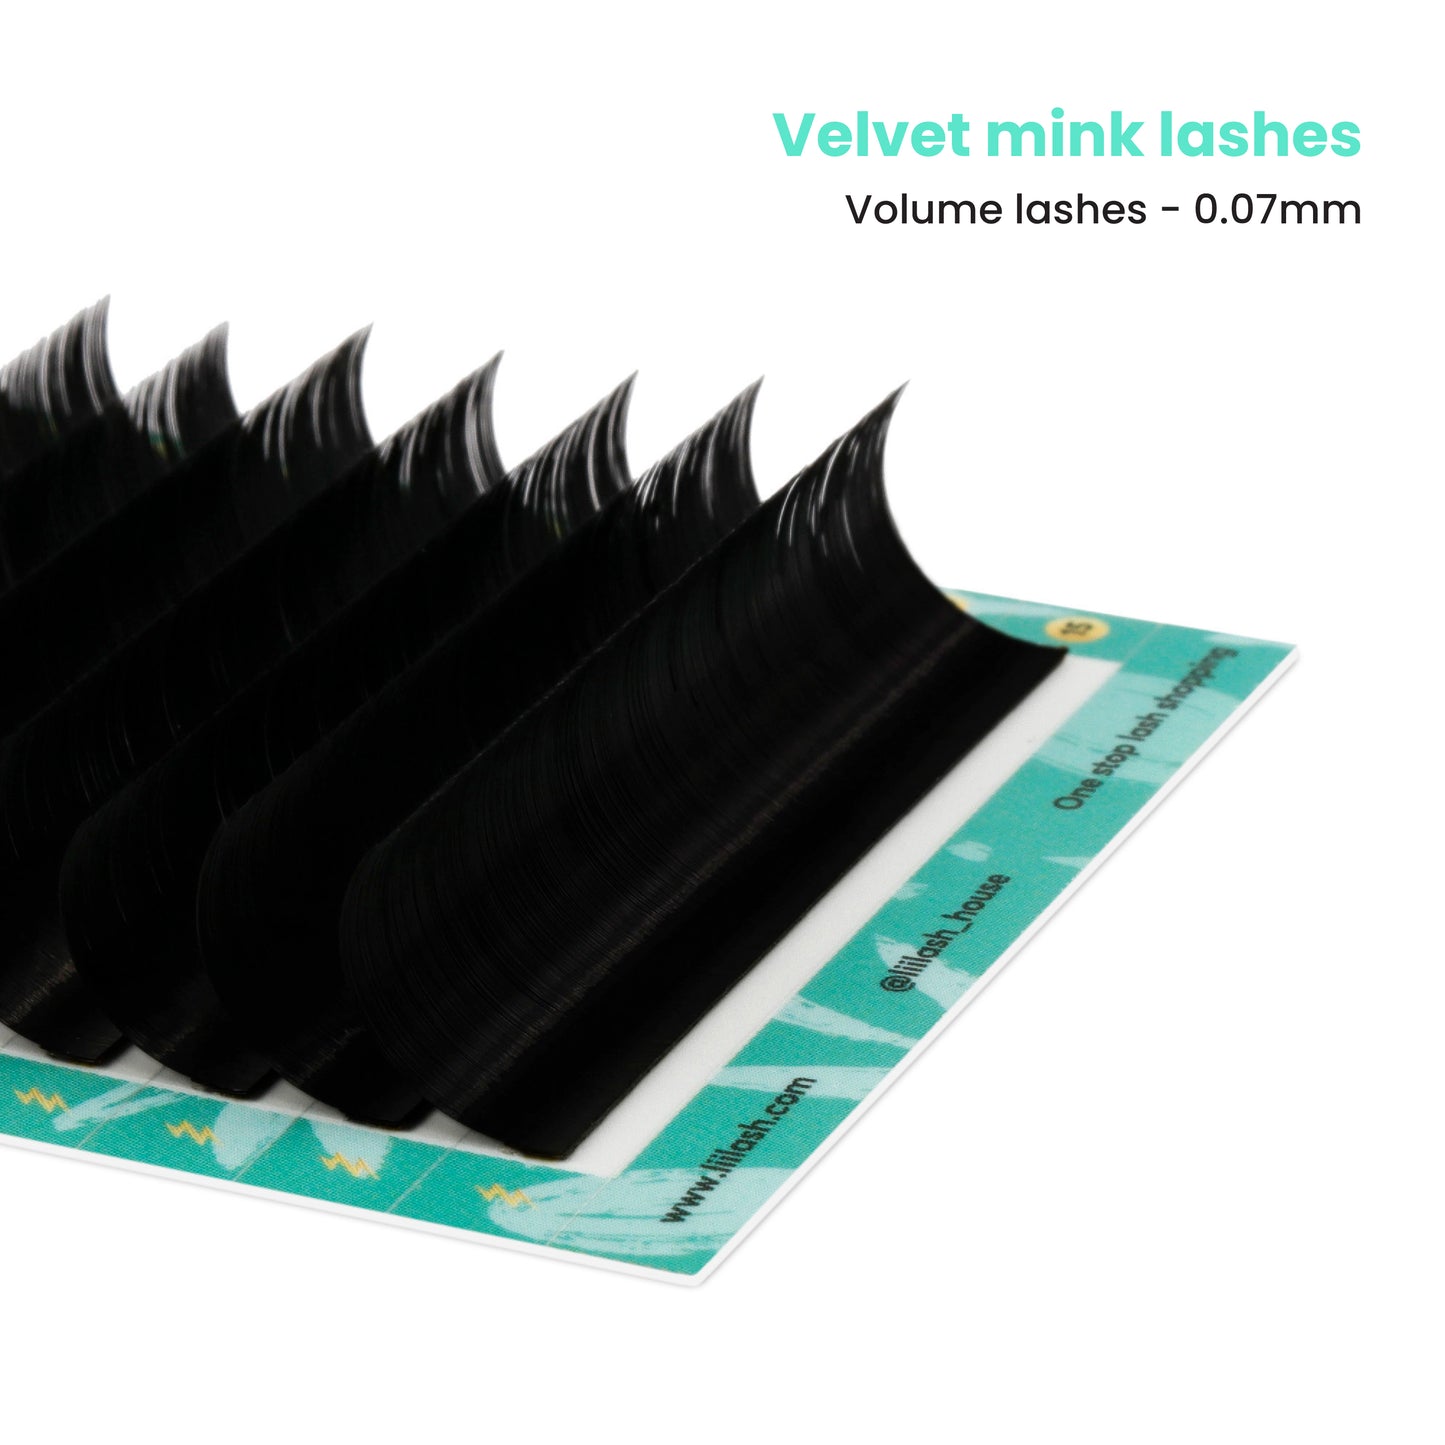 Velvet Mink volume lashes 0.07mm